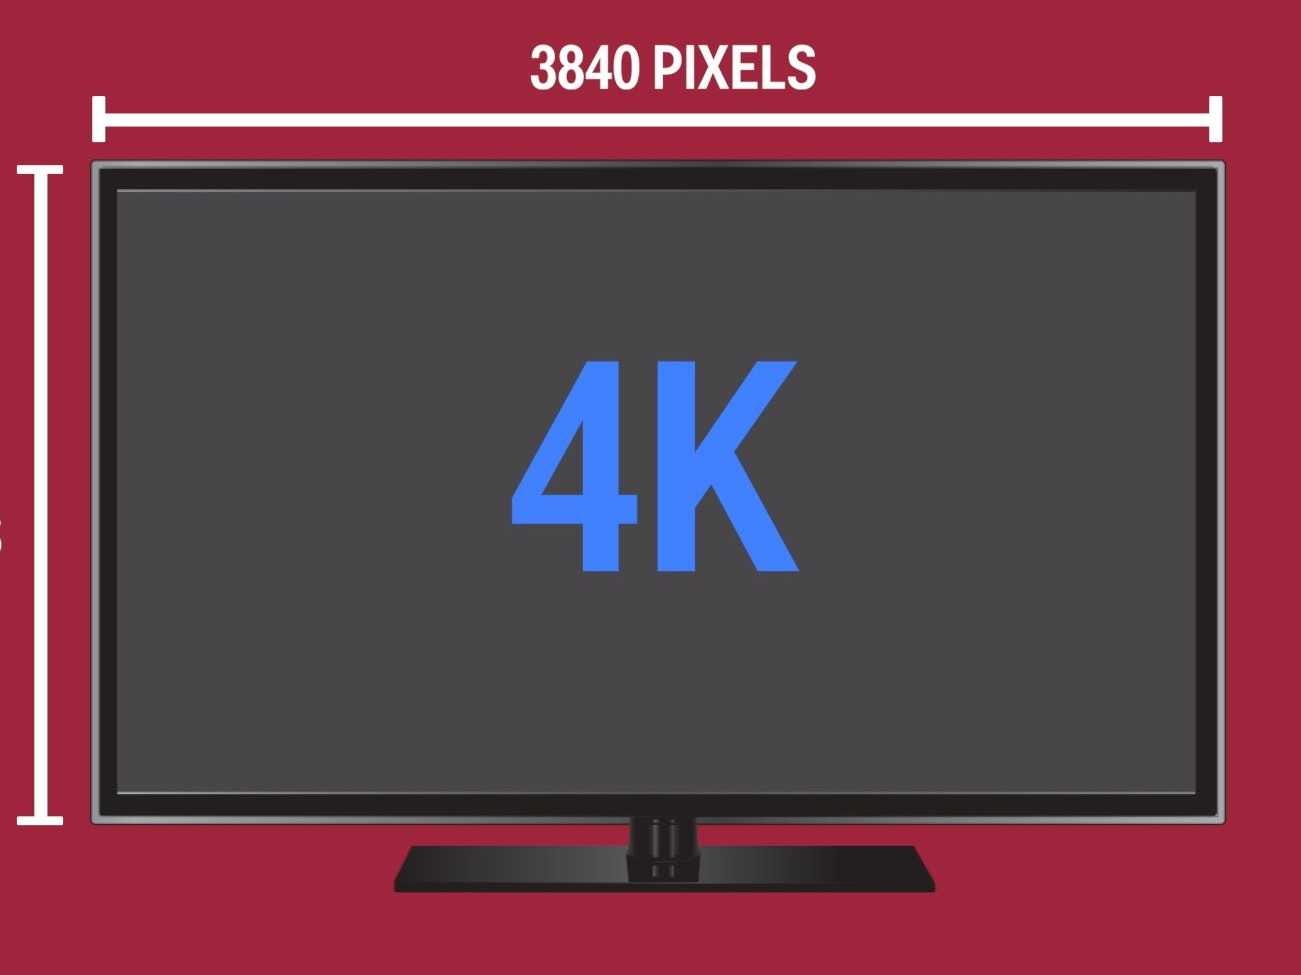 Diagramm eines 4K-Fernsehers mit einer Breite von 3840 Pixeln.